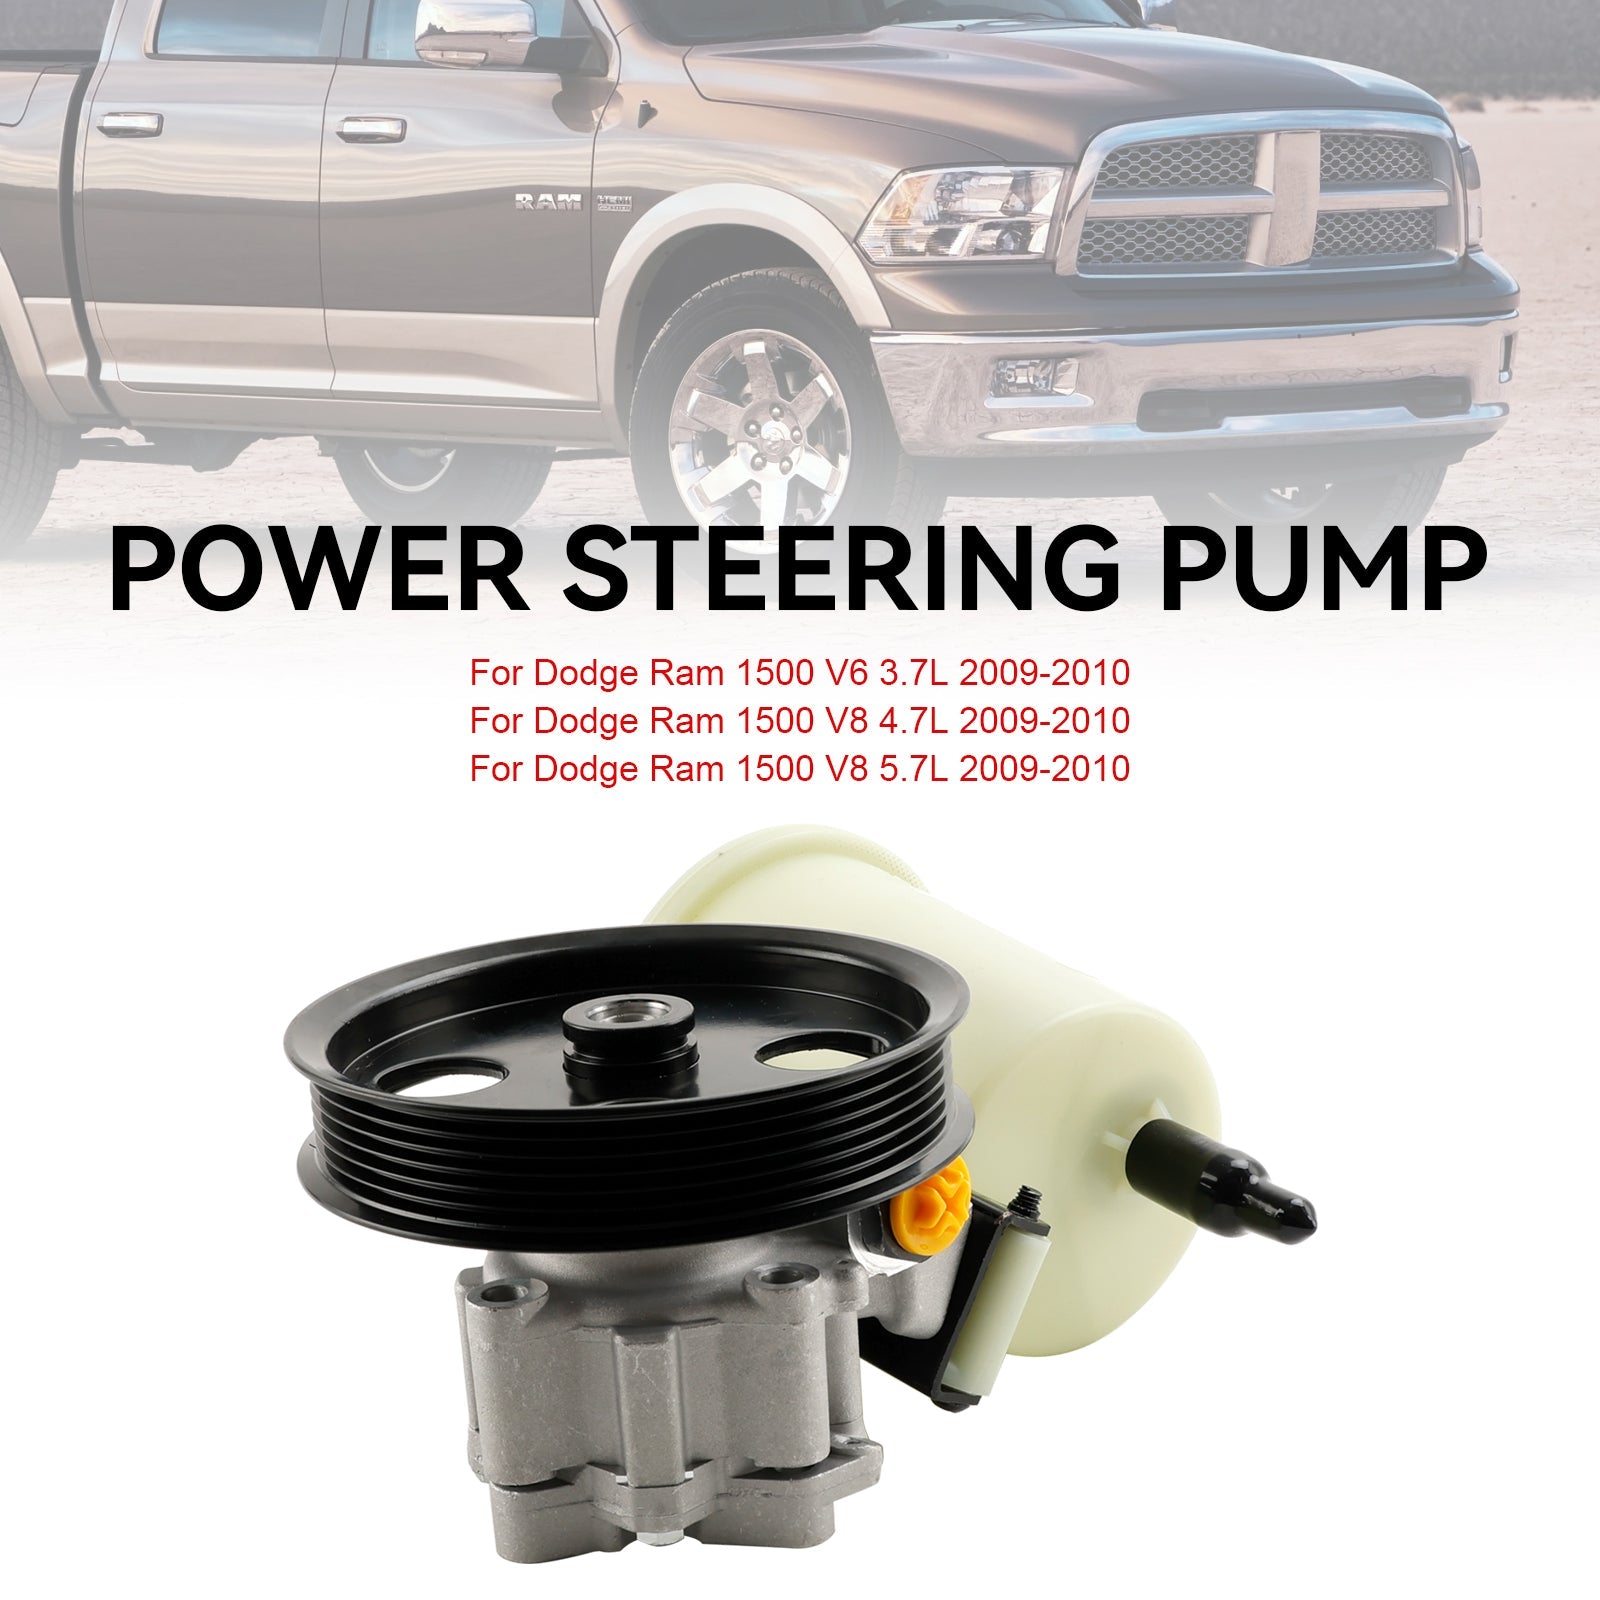 Pompe de direction assistée Dodge RAM 1500 2009-2010 avec poulie et réservoir